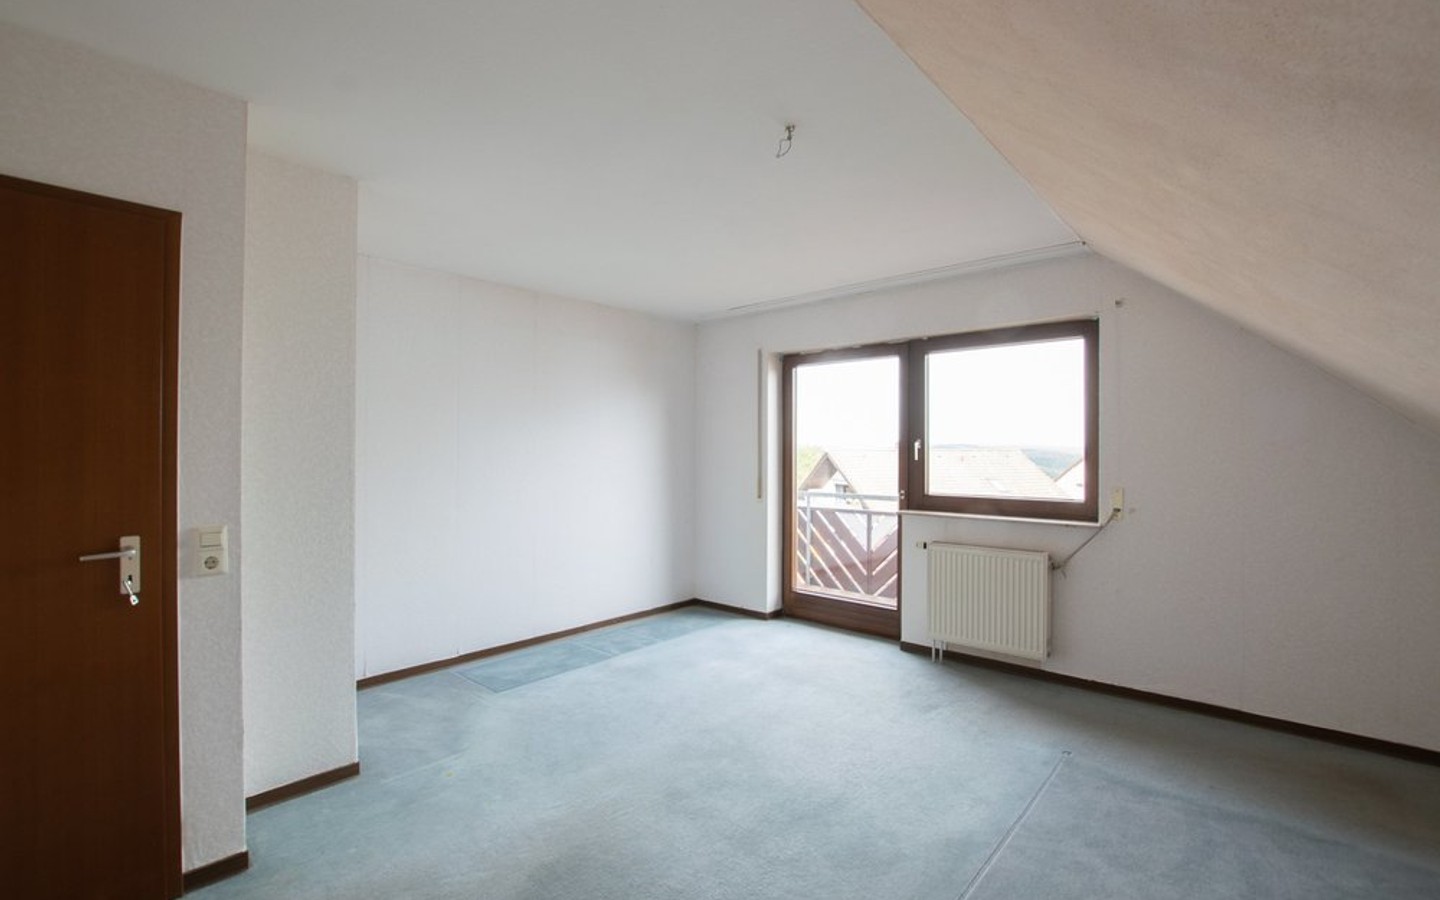 Zimmer OG - Großzügige Doppelhaushälfte mit viel Potenzial in ruhiger Aussichtslage von Gaiberg